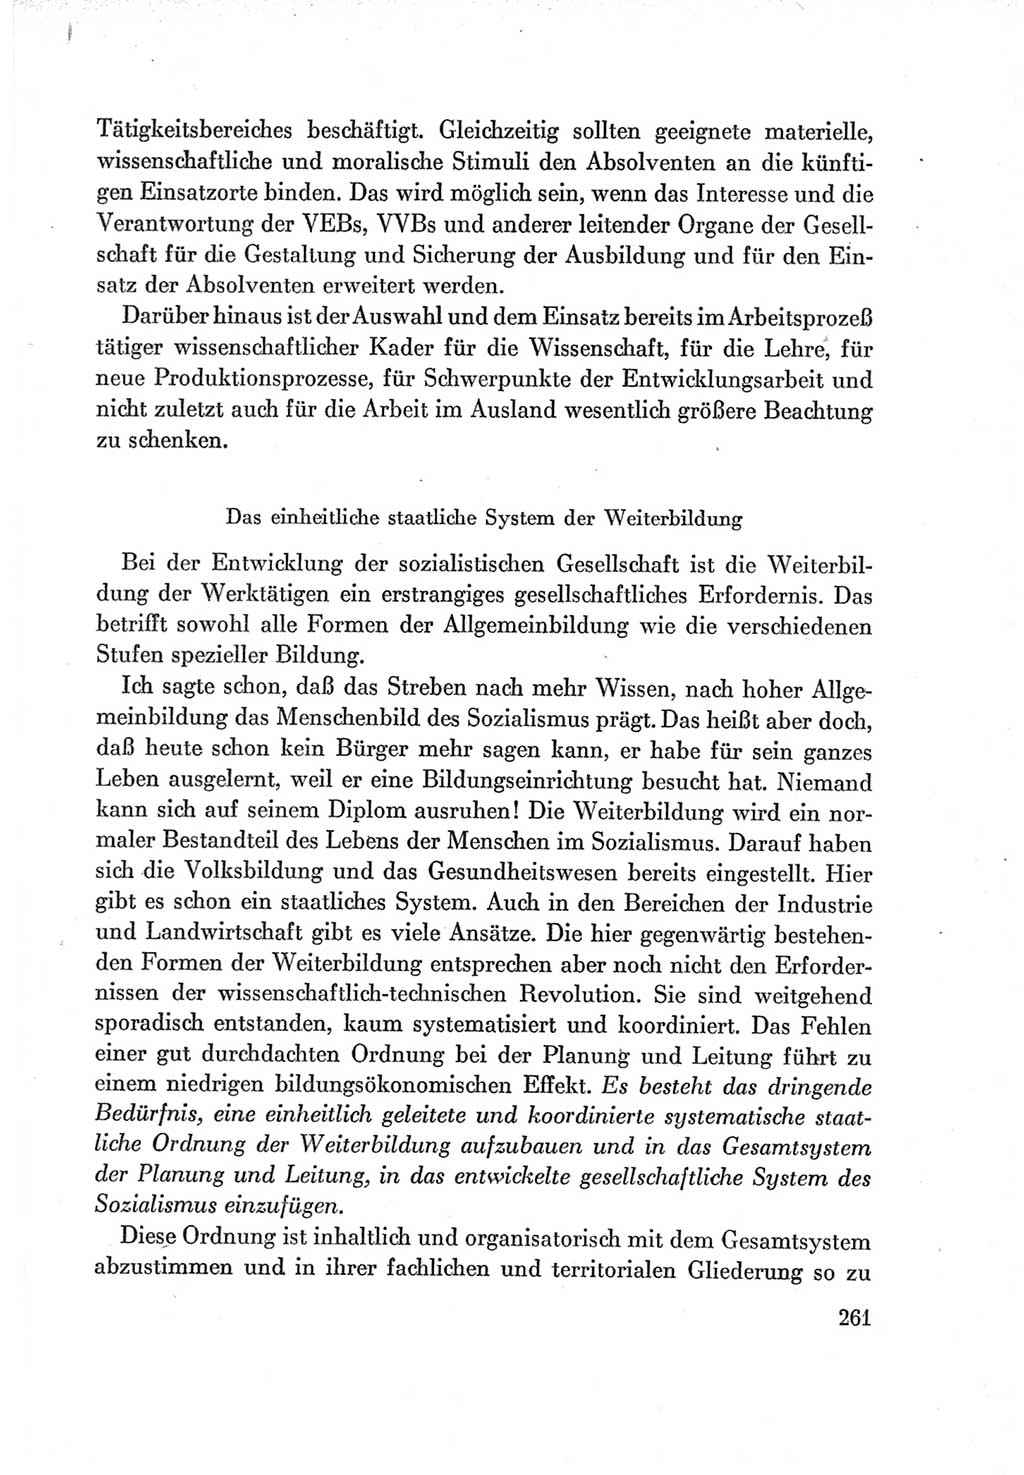 Protokoll der Verhandlungen des Ⅶ. Parteitages der Sozialistischen Einheitspartei Deutschlands (SED) [Deutsche Demokratische Republik (DDR)] 1967, Band Ⅰ, Seite 261 (Prot. Verh. Ⅶ. PT SED DDR 1967, Bd. Ⅰ, S. 261)